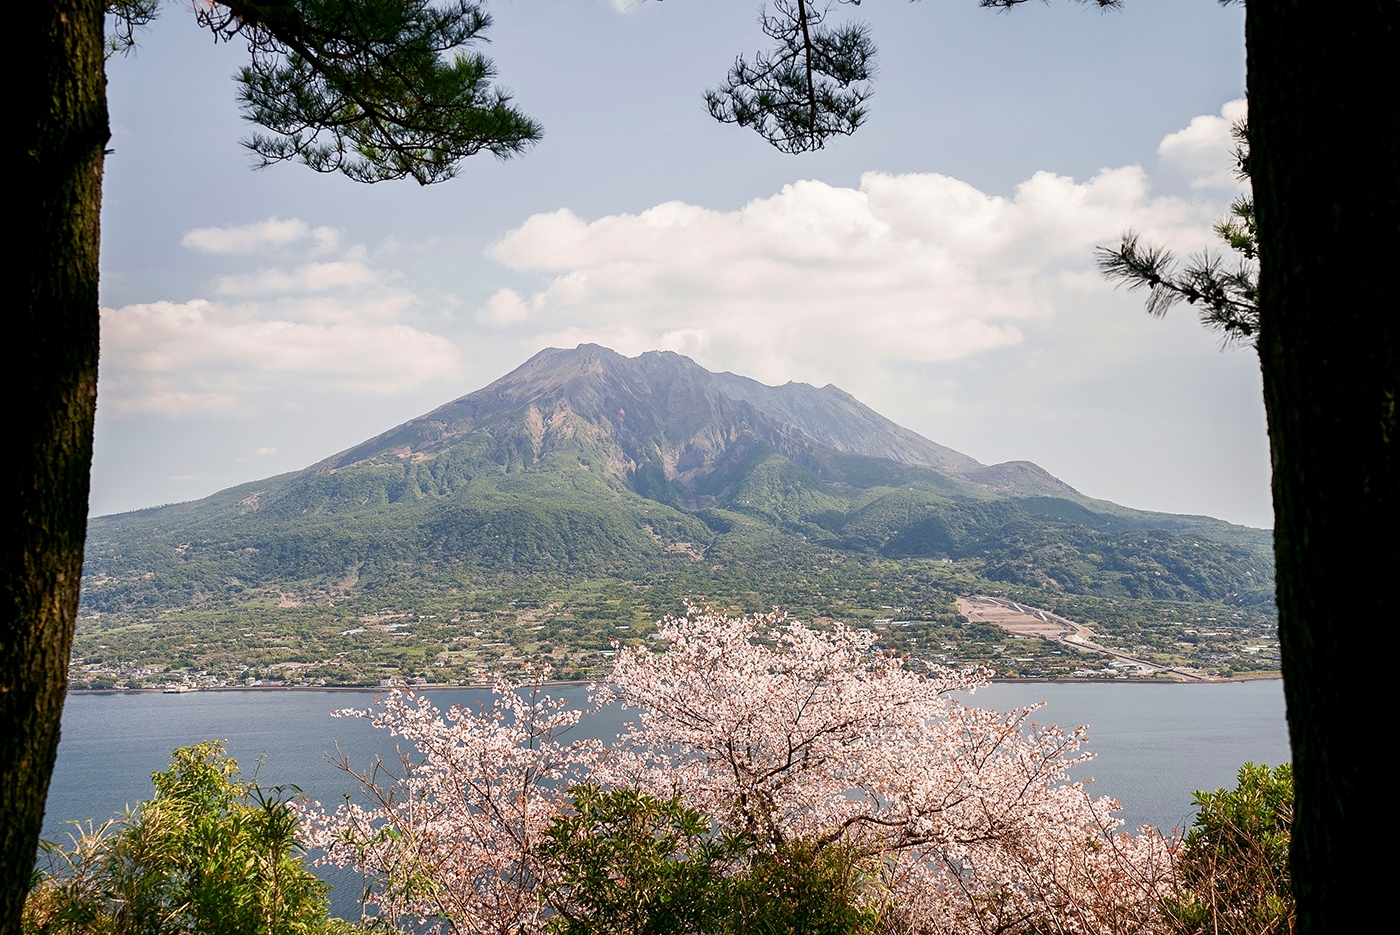 가고시마의 사쿠라지마 산은 특히 봄에 아름다운 경관을 자랑하는 성층화산으로 유명하다